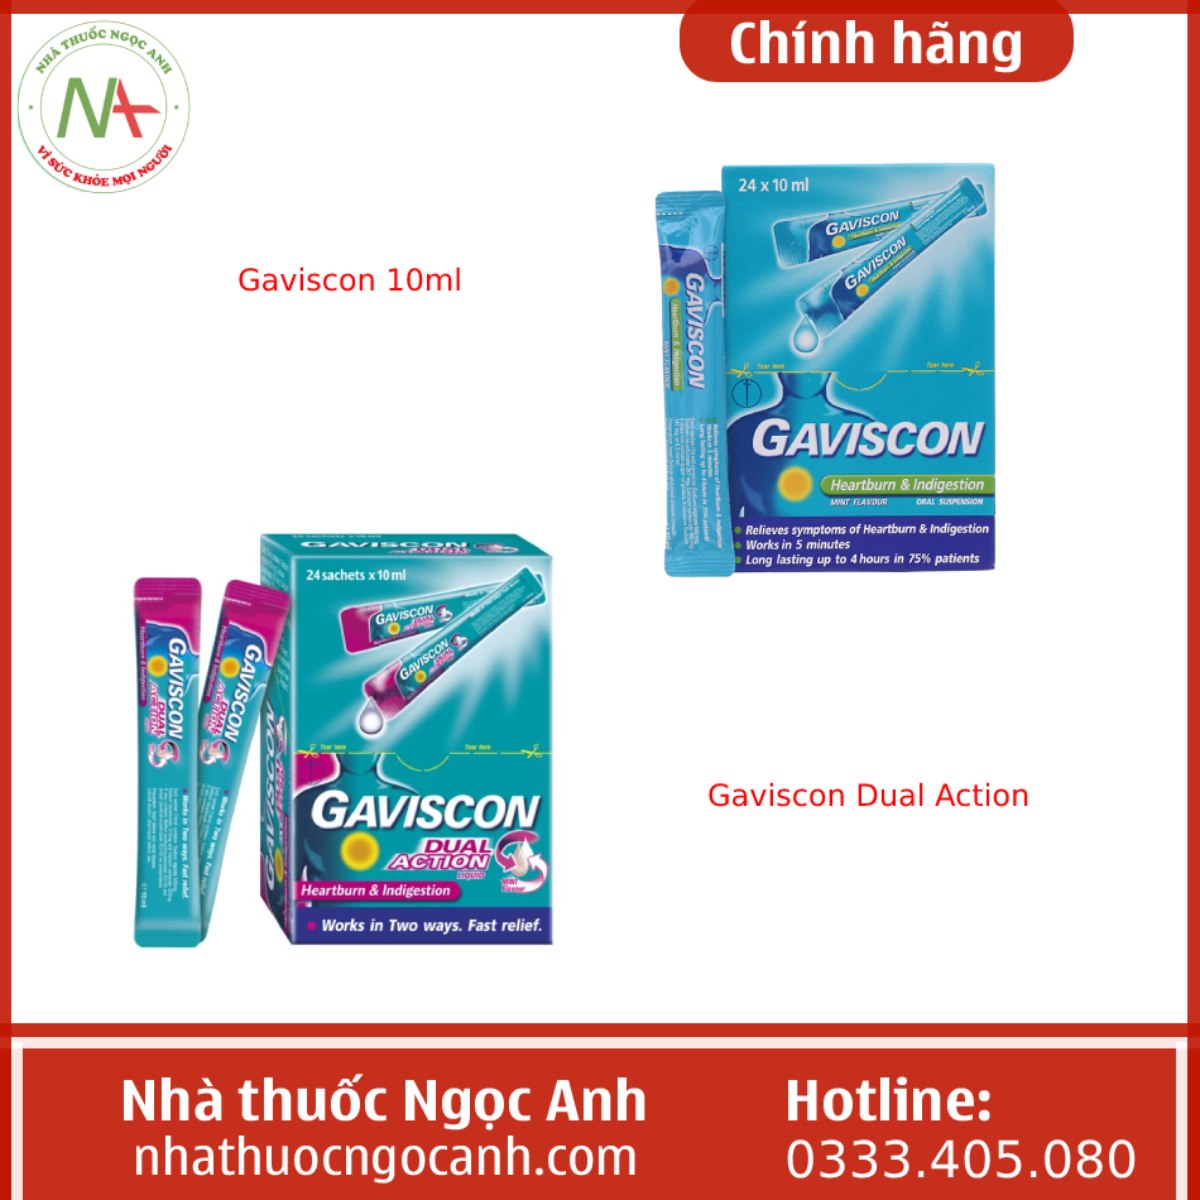 Gaviscon 10ml và Gaviscon Dual Action